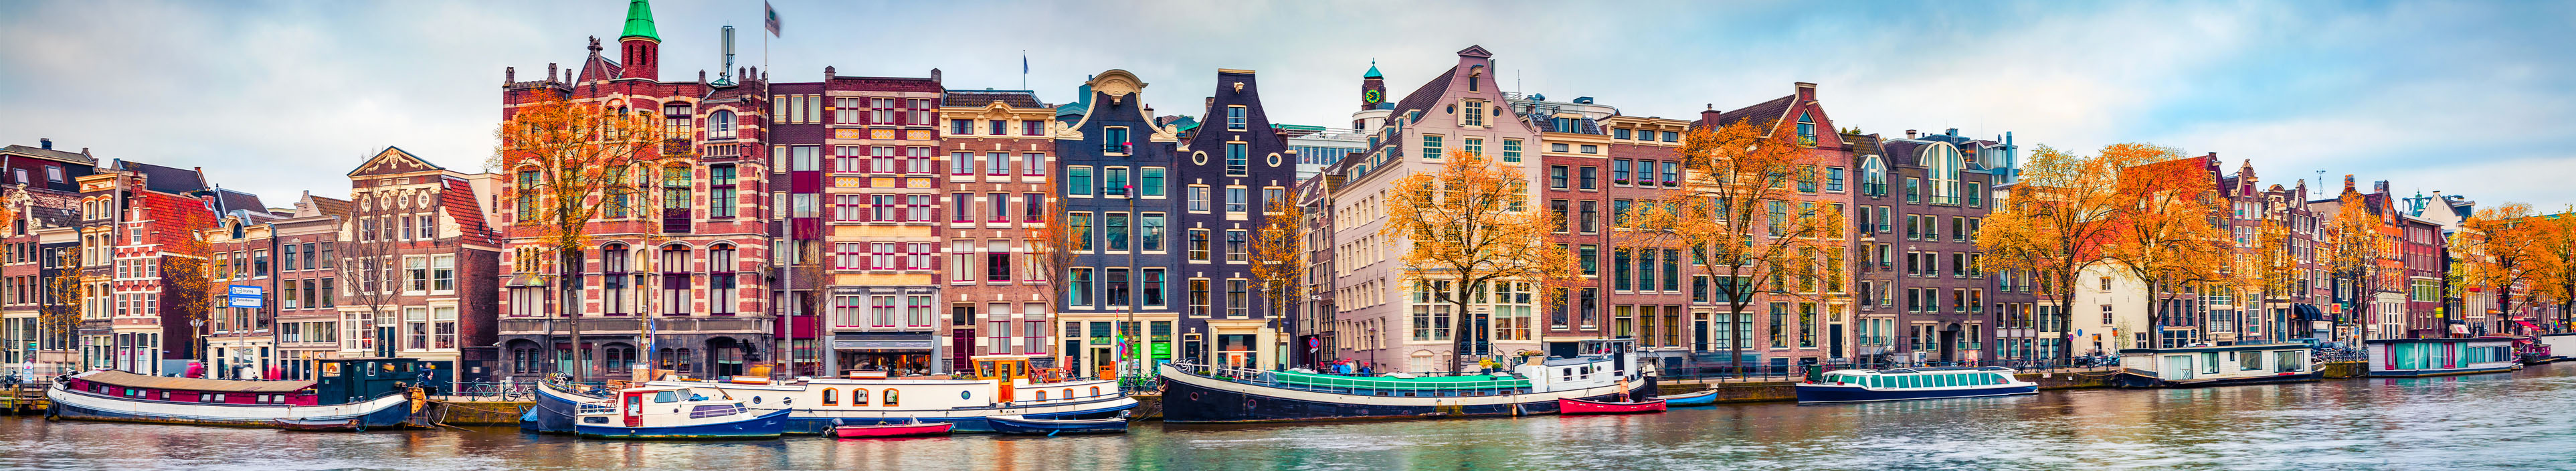 Blick auf Häuser in Amsterdam